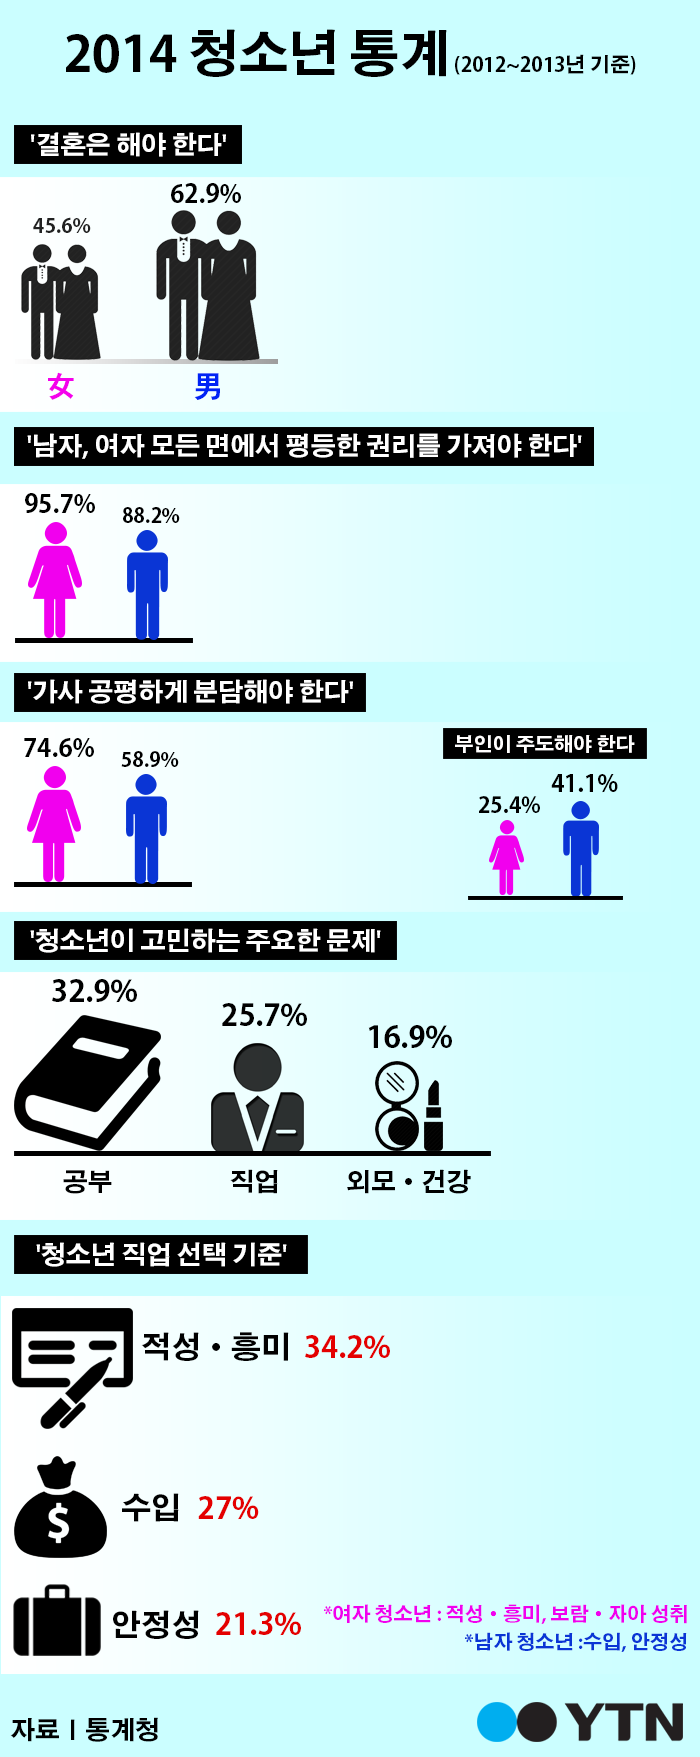 [한컷뉴스] 2014년 청소년 통계